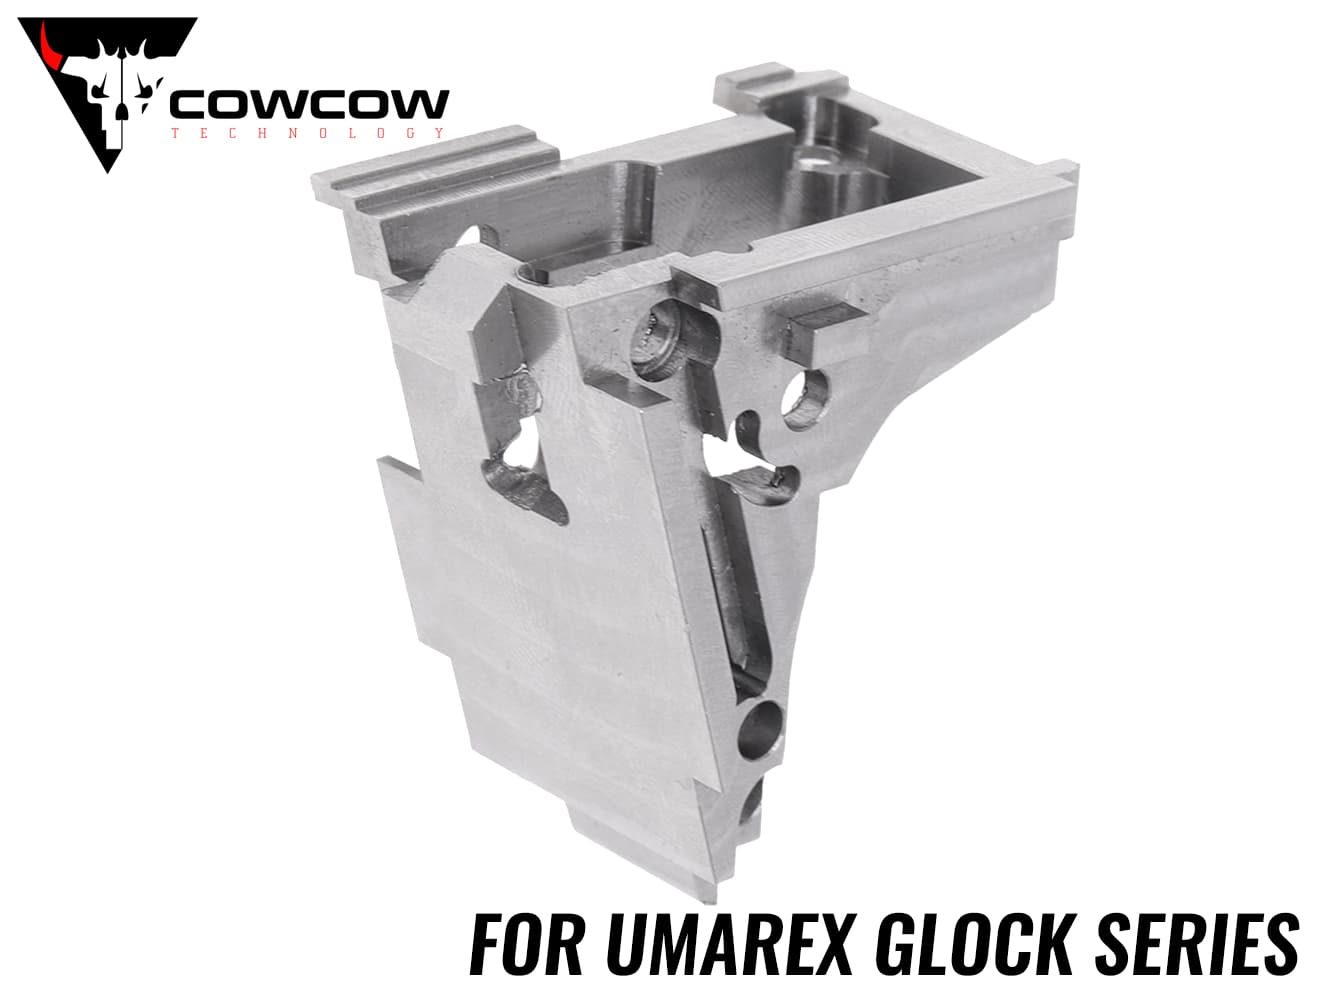 COWCOW TECHNOLOGY ステンレスCNC ハンマーハウジング UMAREX GLOCKシリーズ◆グロック CNC加工 高圧ガス使用 ポリッシュ加工 摩擦低減 作動性向上 強度アップ